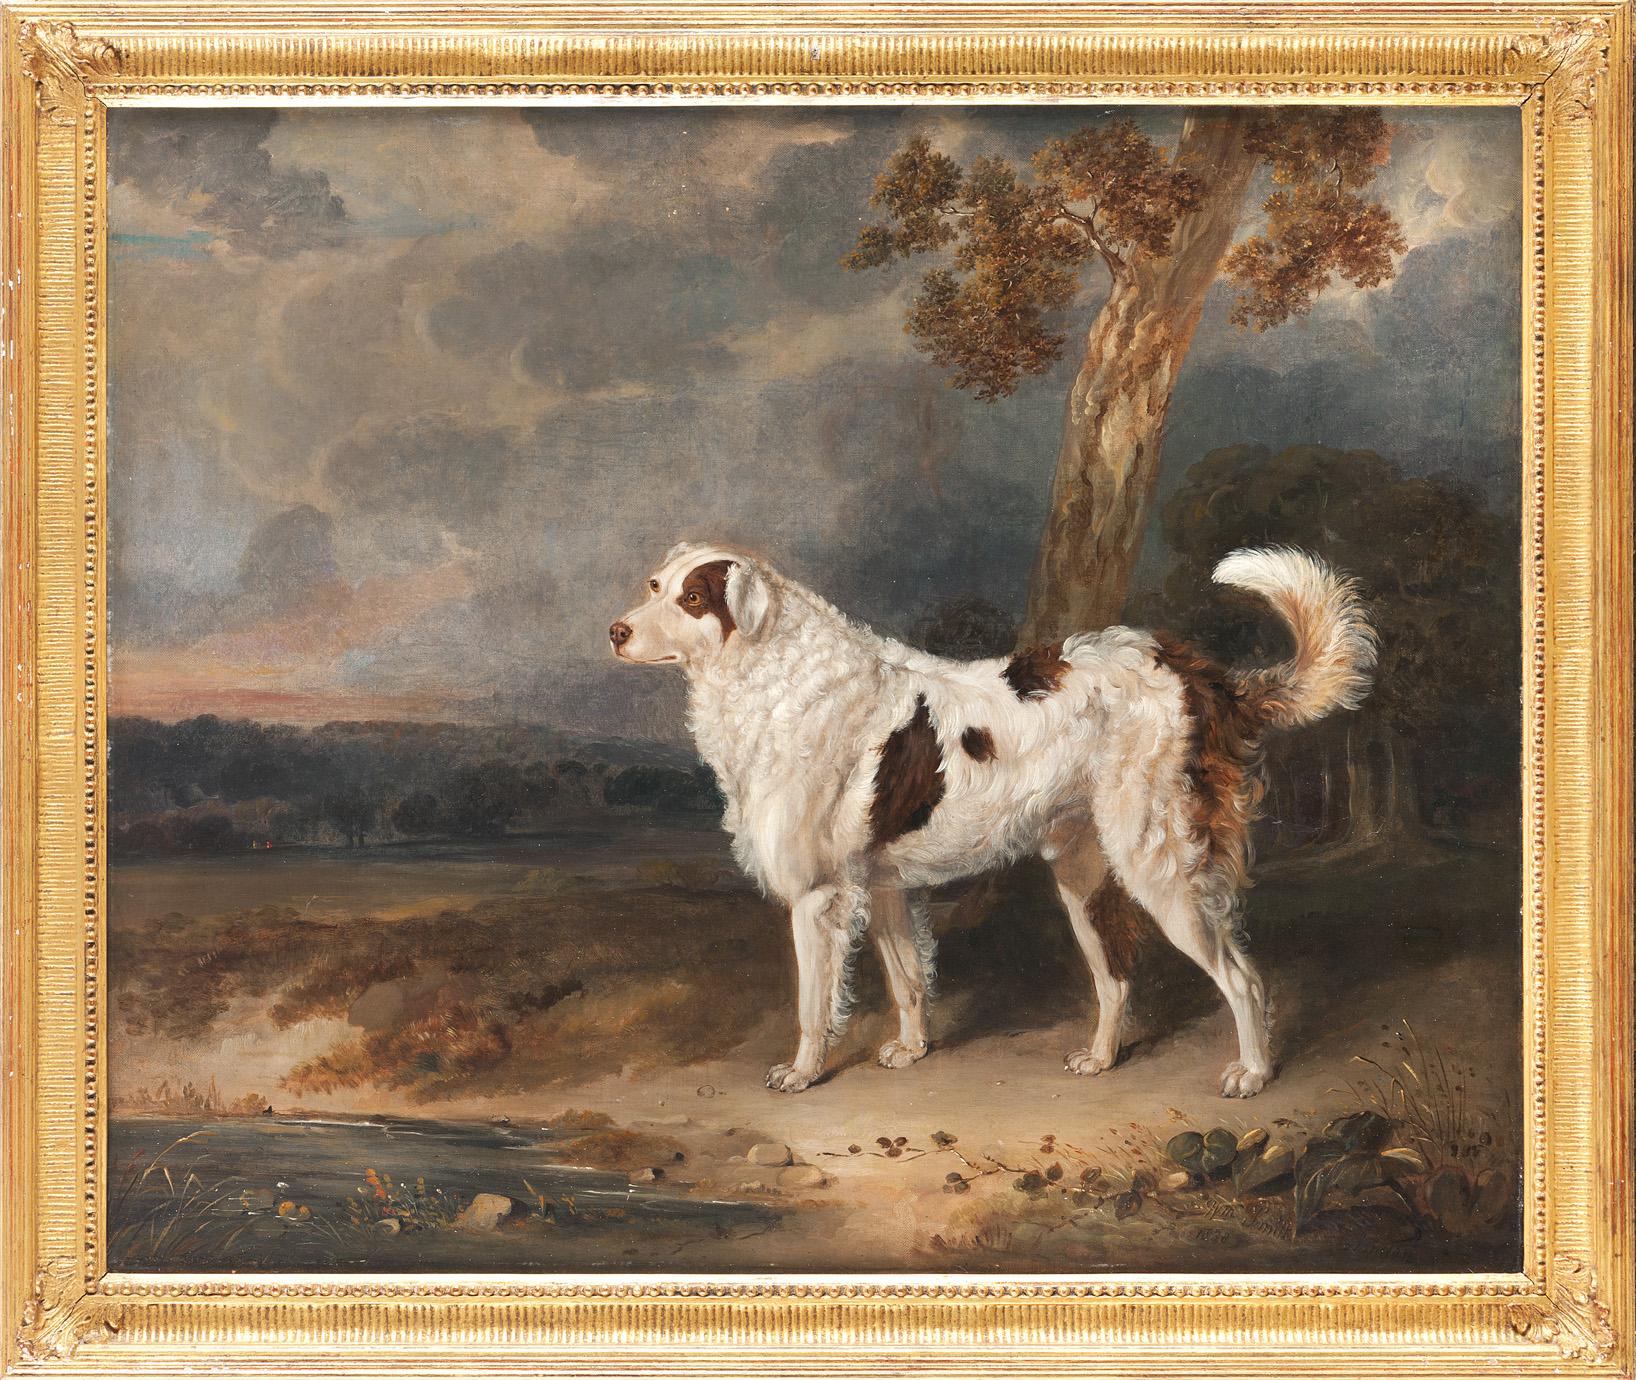 Die Werke von William Smith wurden zwischen 1813 und 1859 regelmäßig in der Royal Academy in London ausgestellt. Dennoch ist wenig über diesen Künstler bekannt. Er lebte in Shropshire und war als Tier- und Landschaftsmaler tätig. Besonders häufig